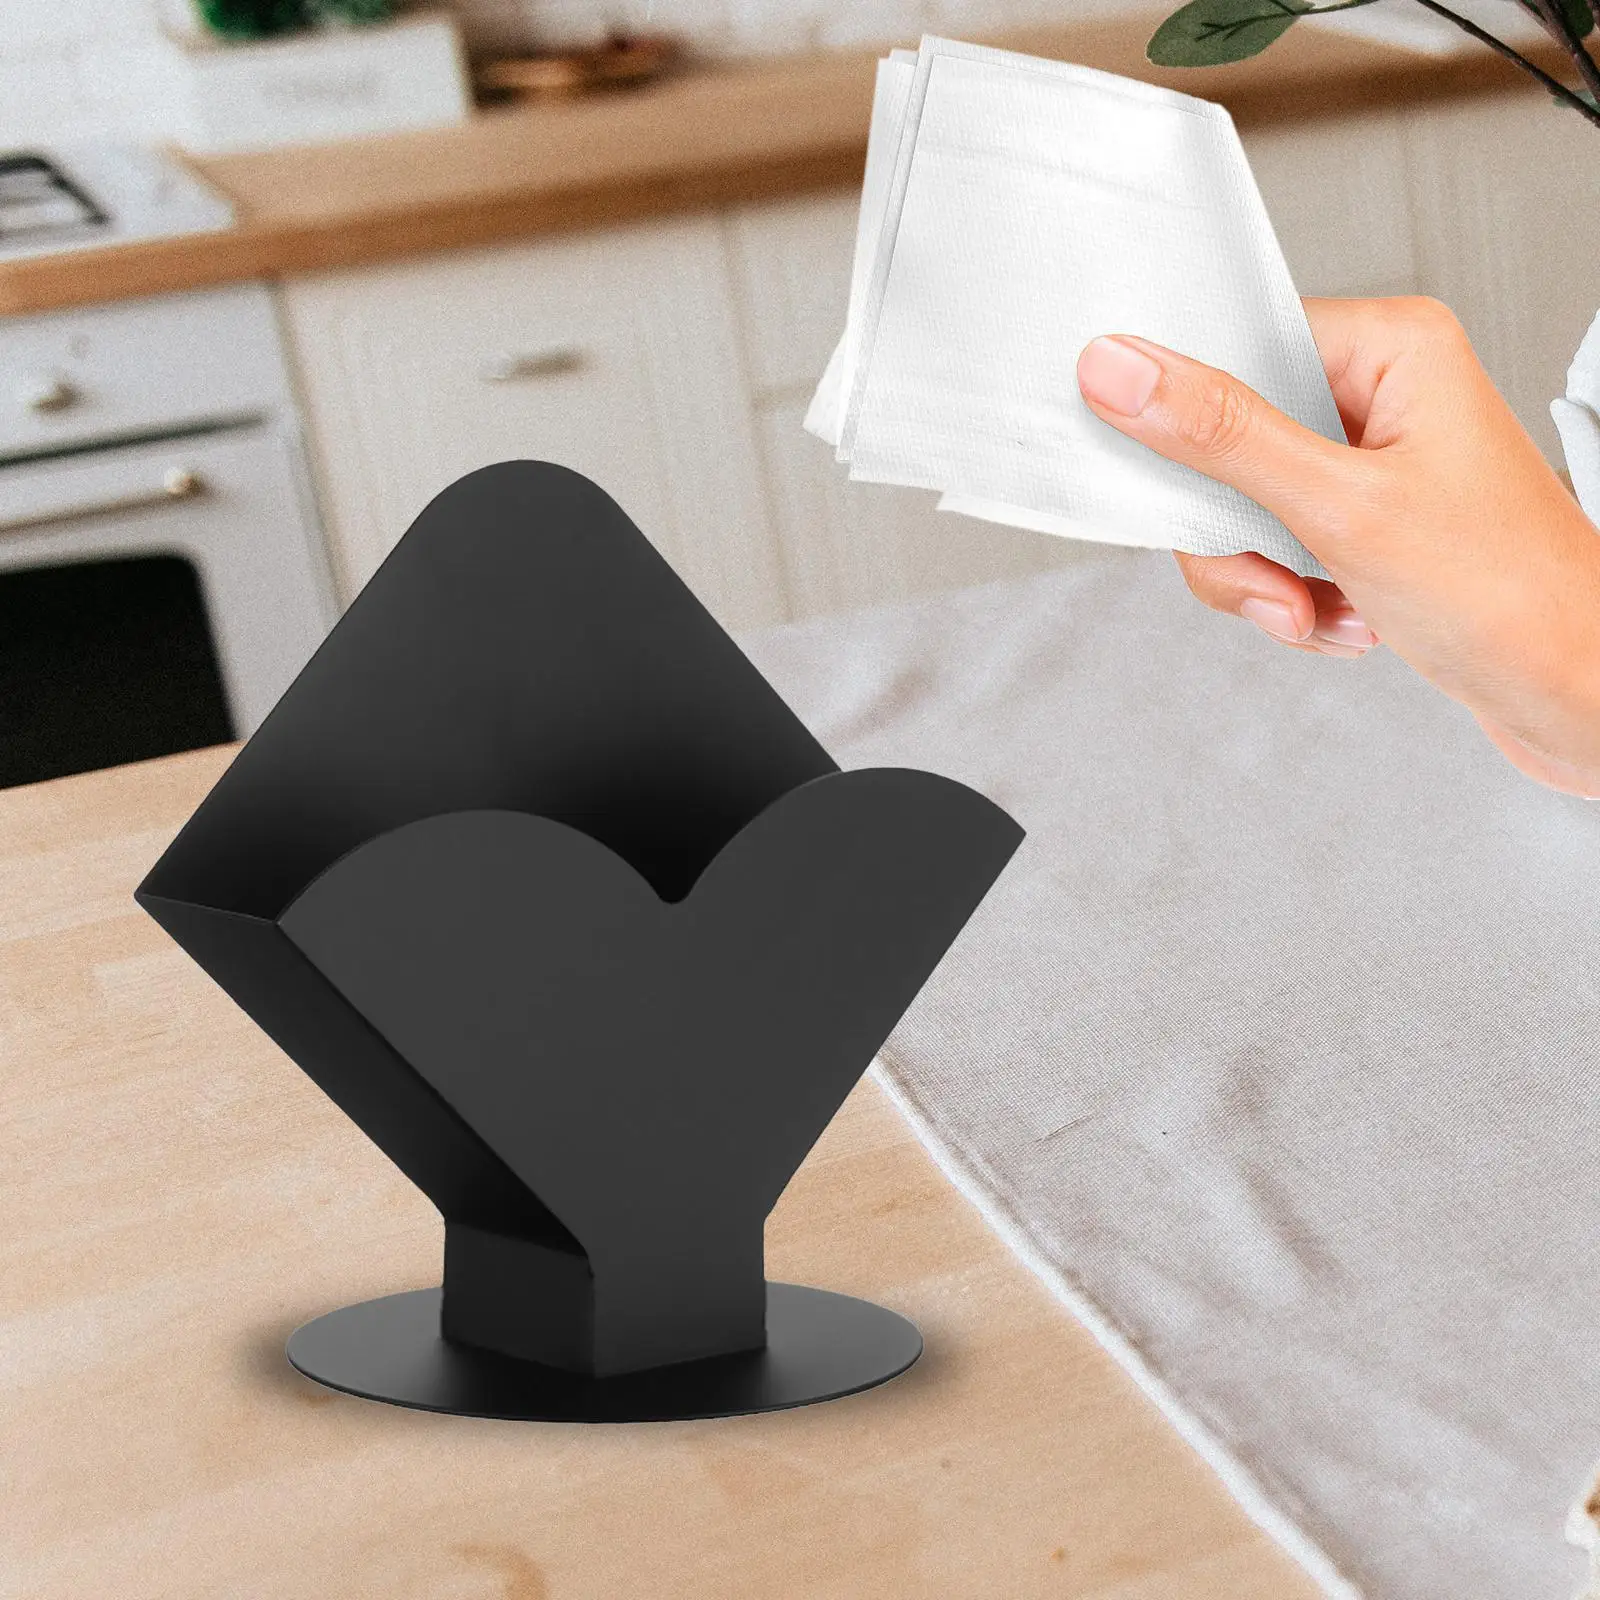 Vertical Napkin Holder Letters Cards Towel Tabletop Napkin Holder Stainless Steel Napkin Holder for Kitchen Home Bedroom Hotel